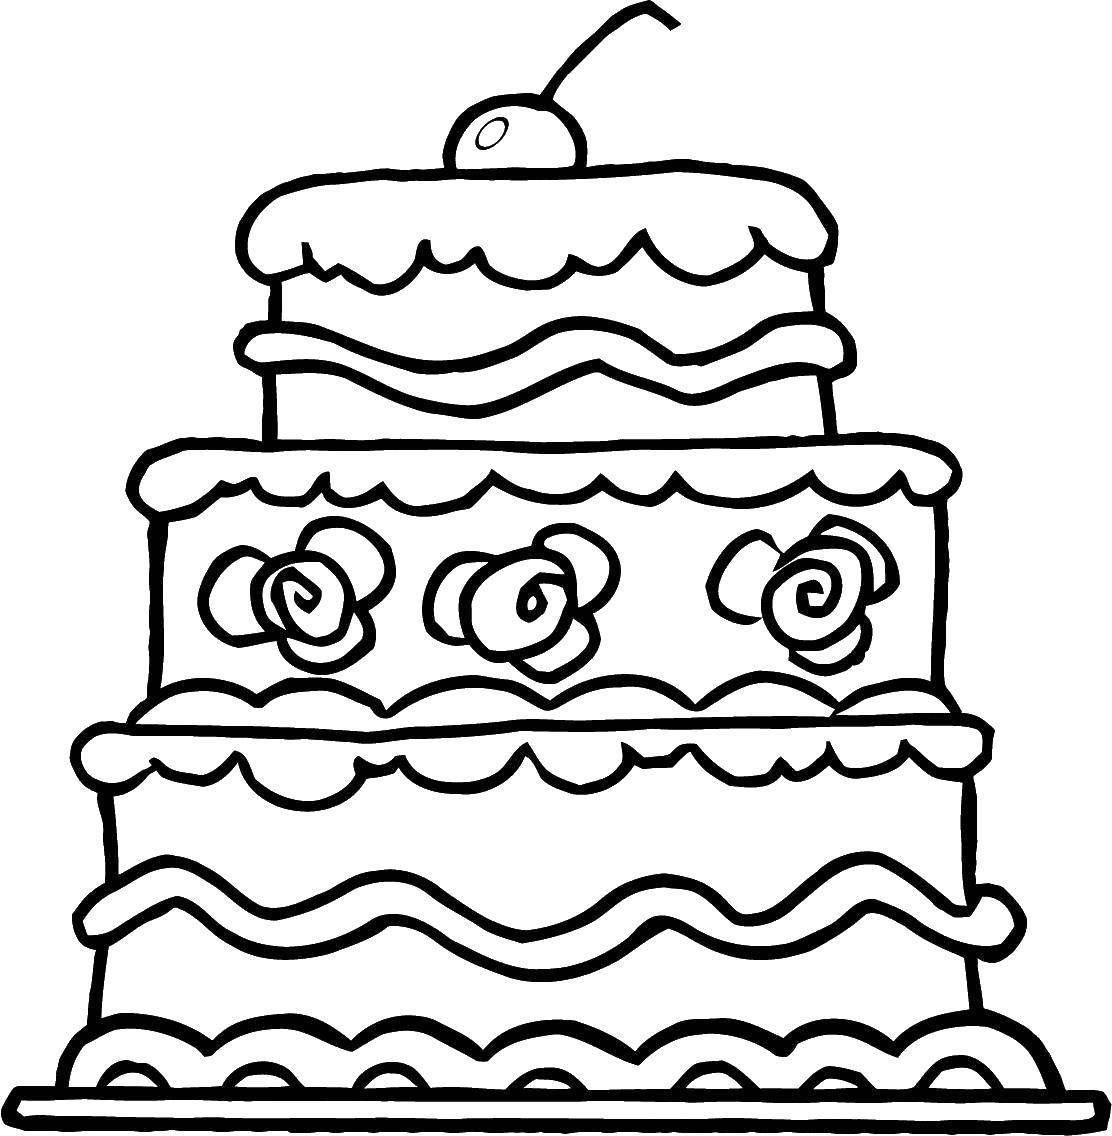 Раскраска торта на день рождения для детей (торты)